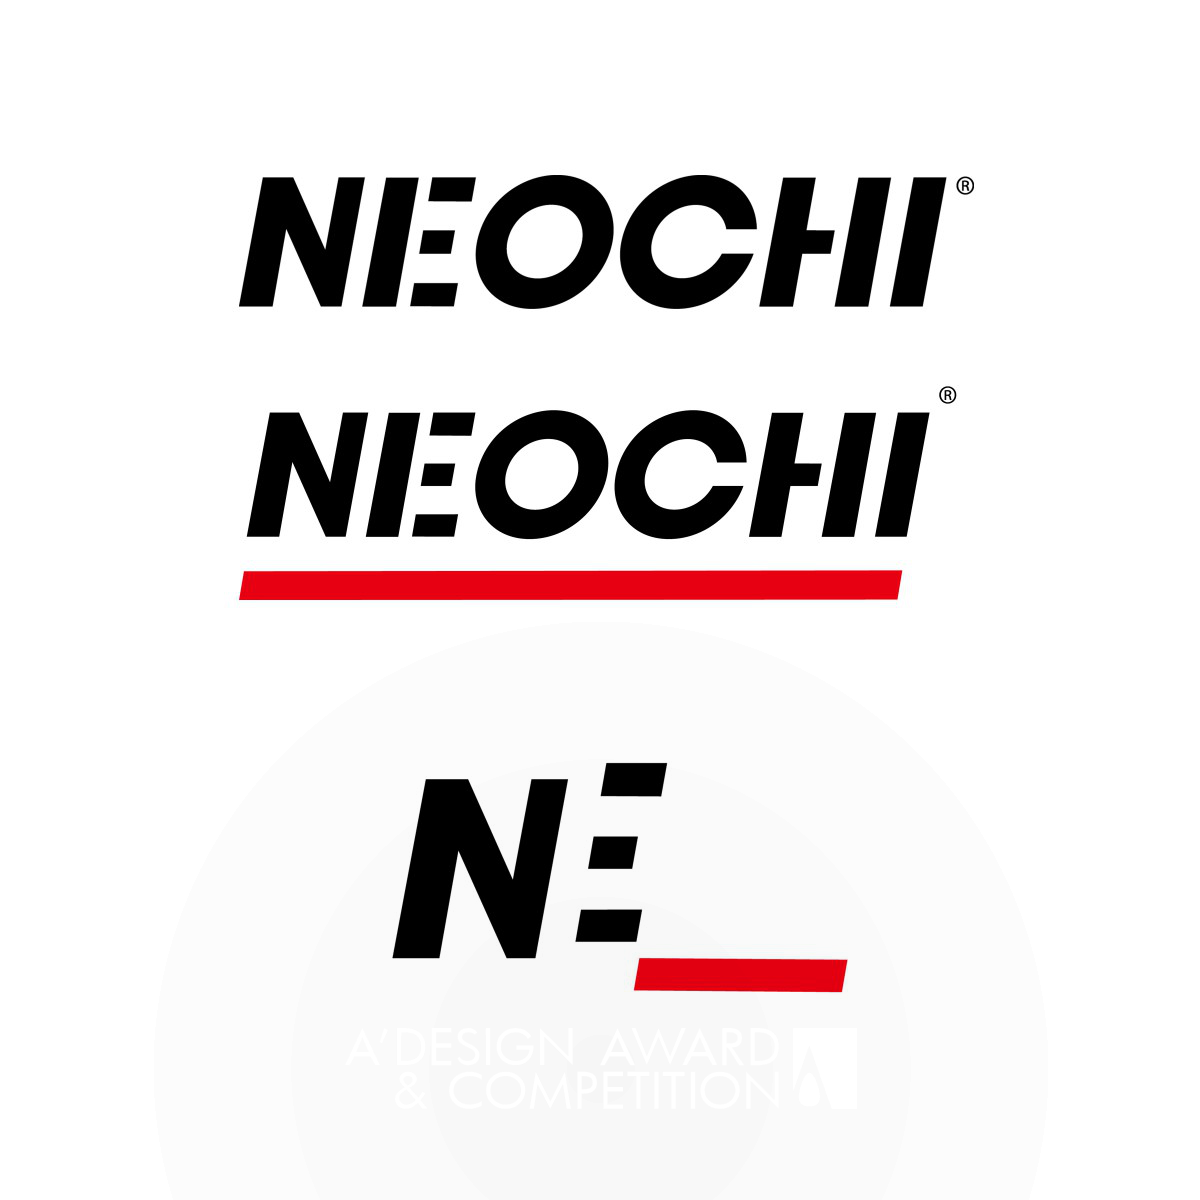 Neochi: The New Chinese Design organization, online platform by Lanjing Zhu